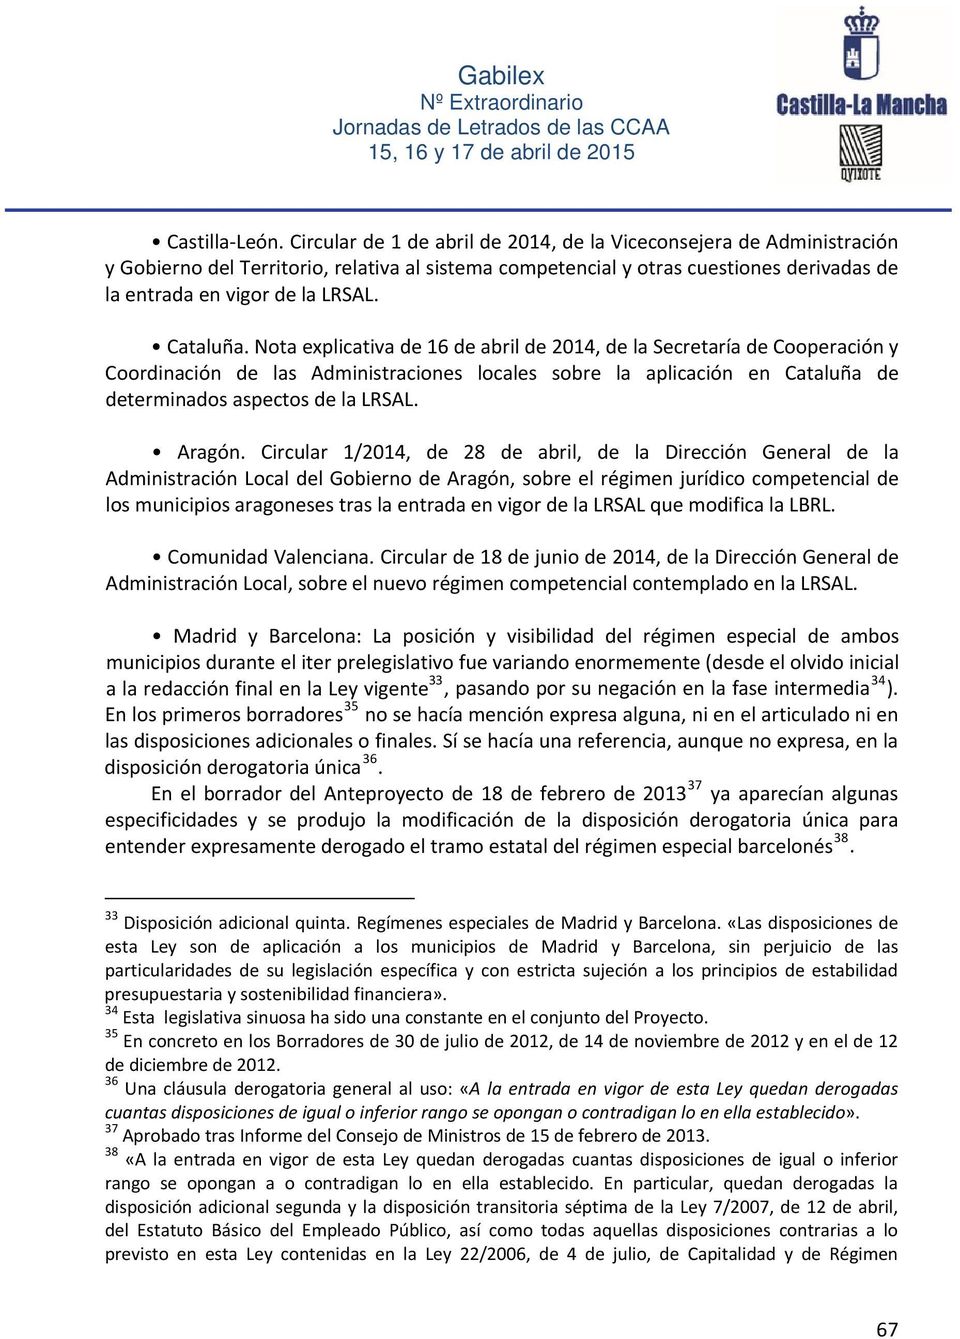 Cataluña. Nota explicativa de 16 de abril de 2014, de la Secretaría de Cooperación y Coordinación de las Administraciones locales sobre la aplicación en Cataluña de determinados aspectos de la LRSAL.